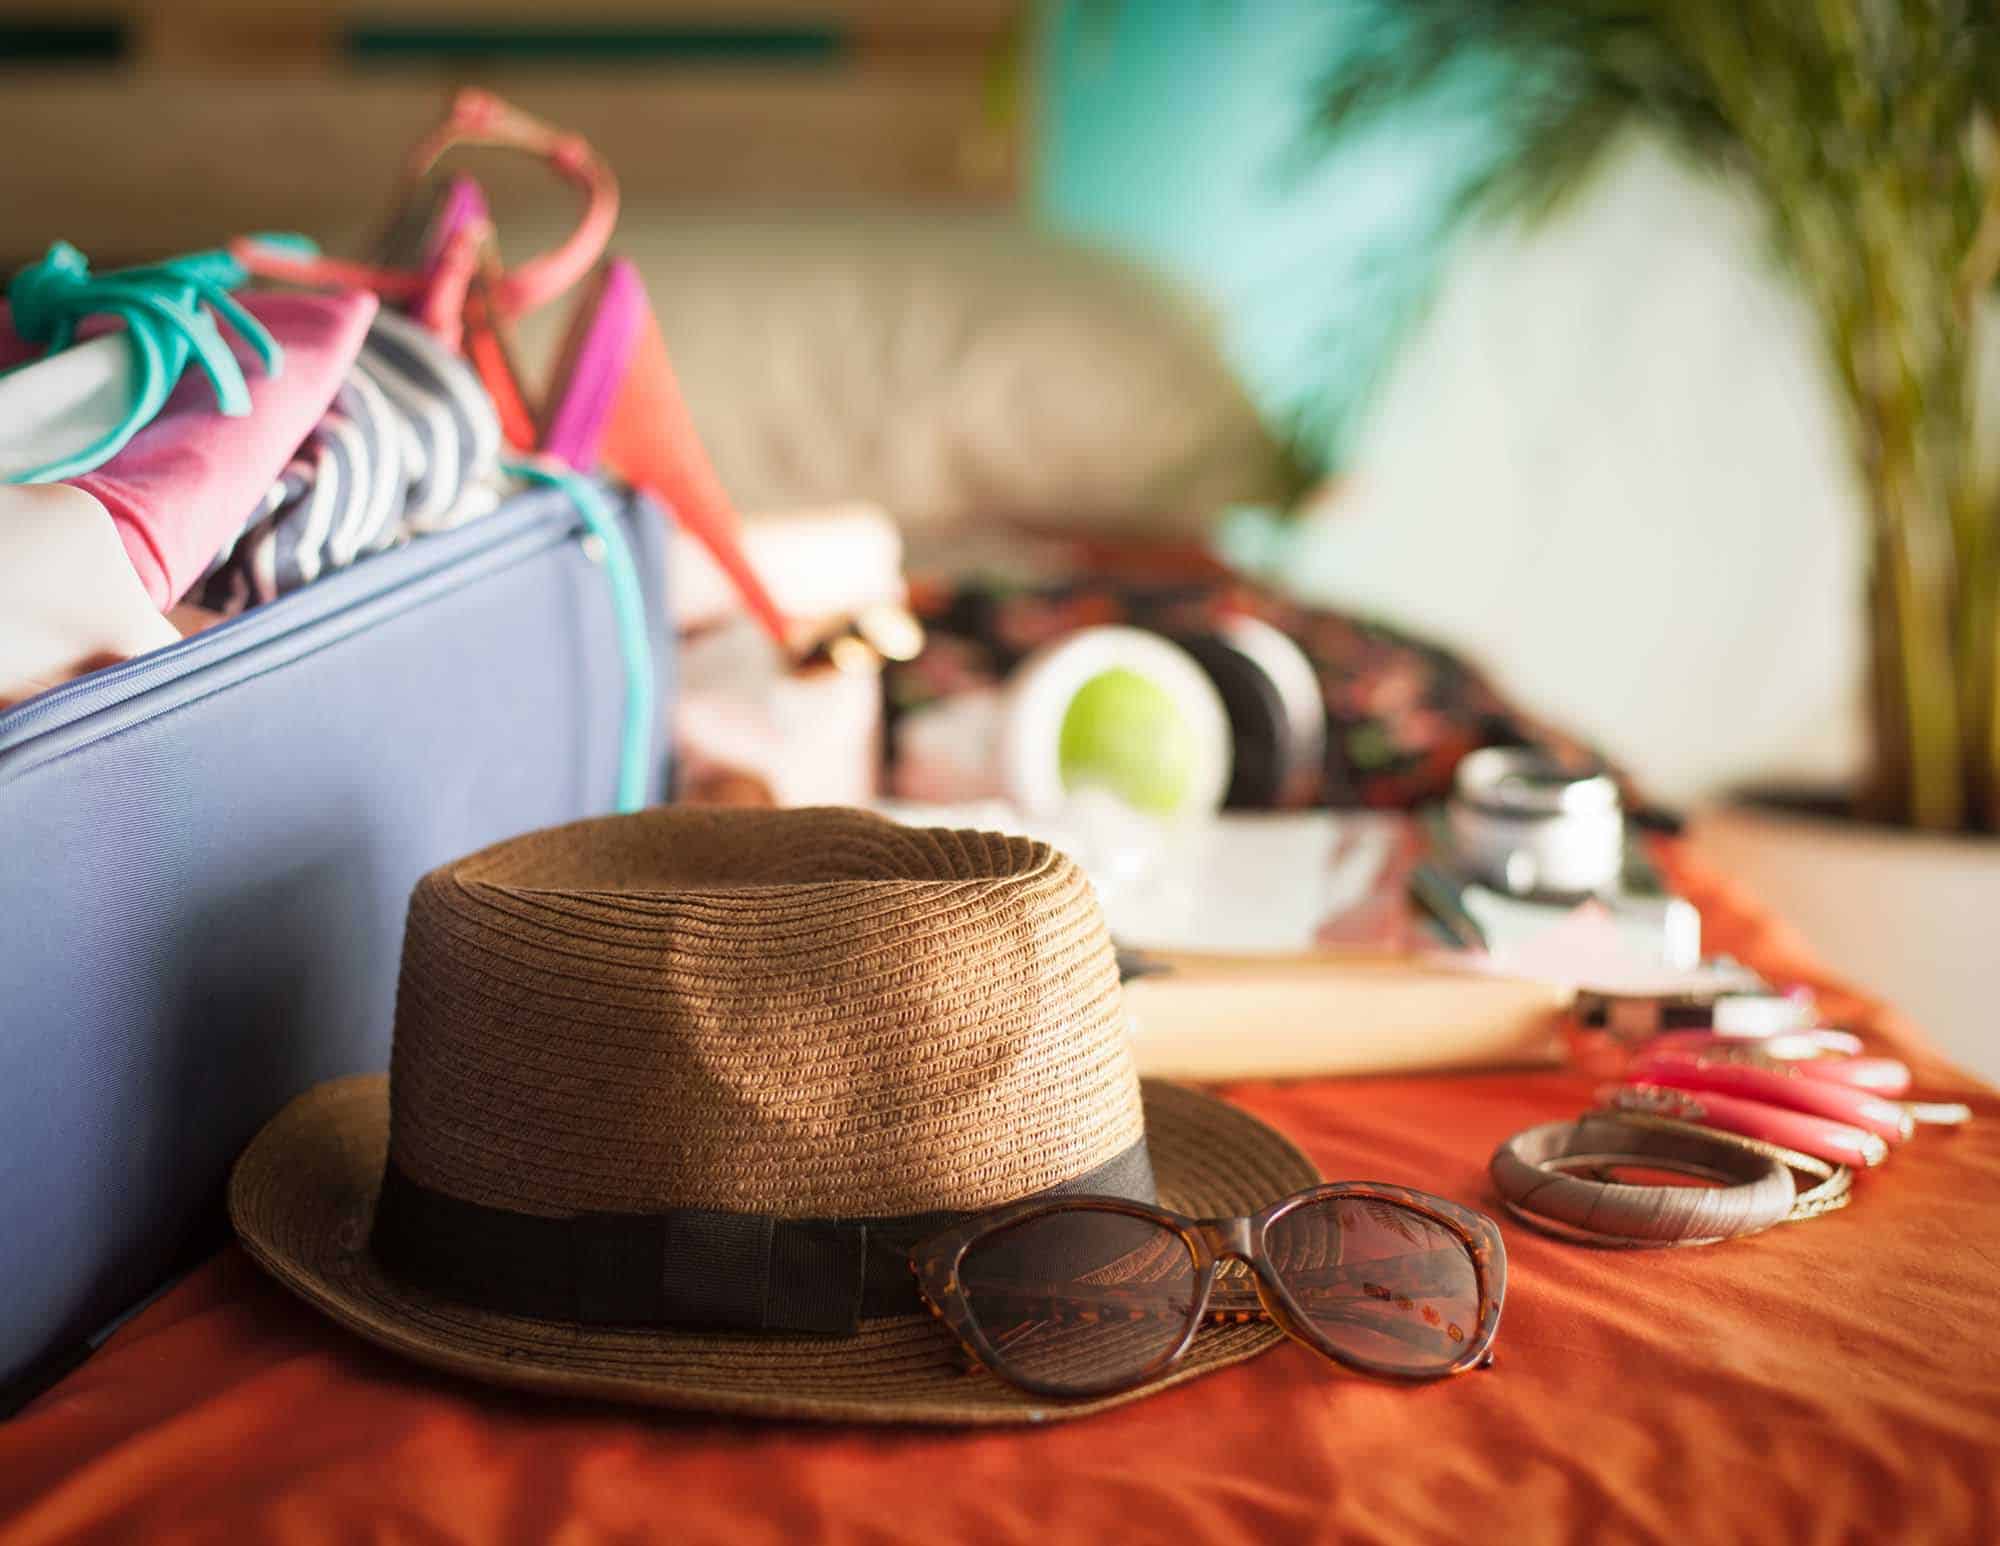 Las 15 cosas que no pueden faltar en tu maleta este verano